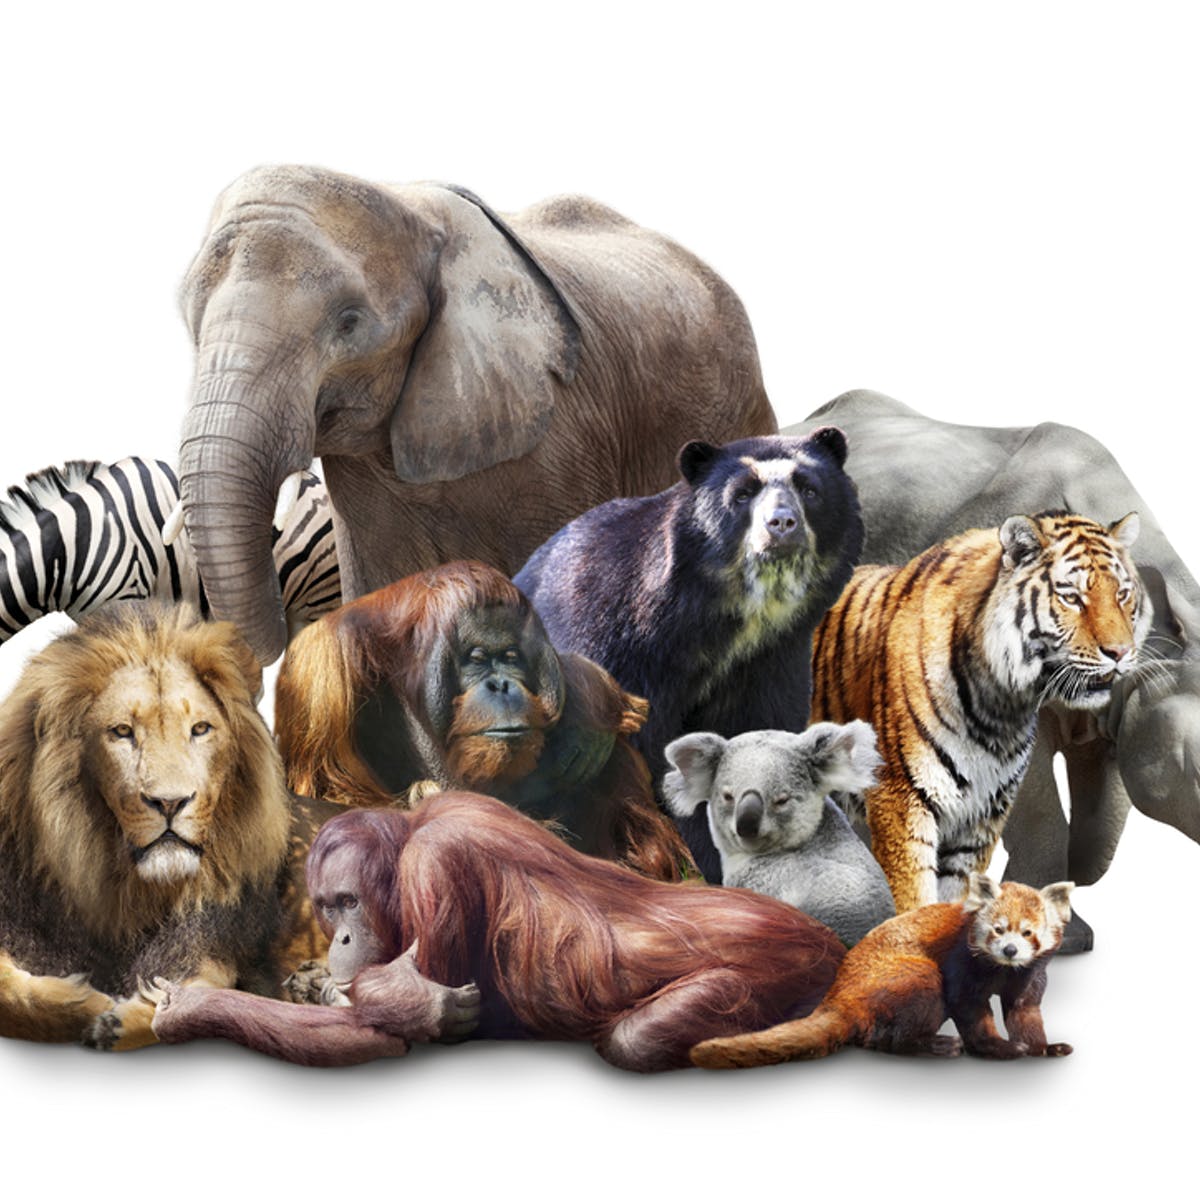 много разных животных на одной картинке